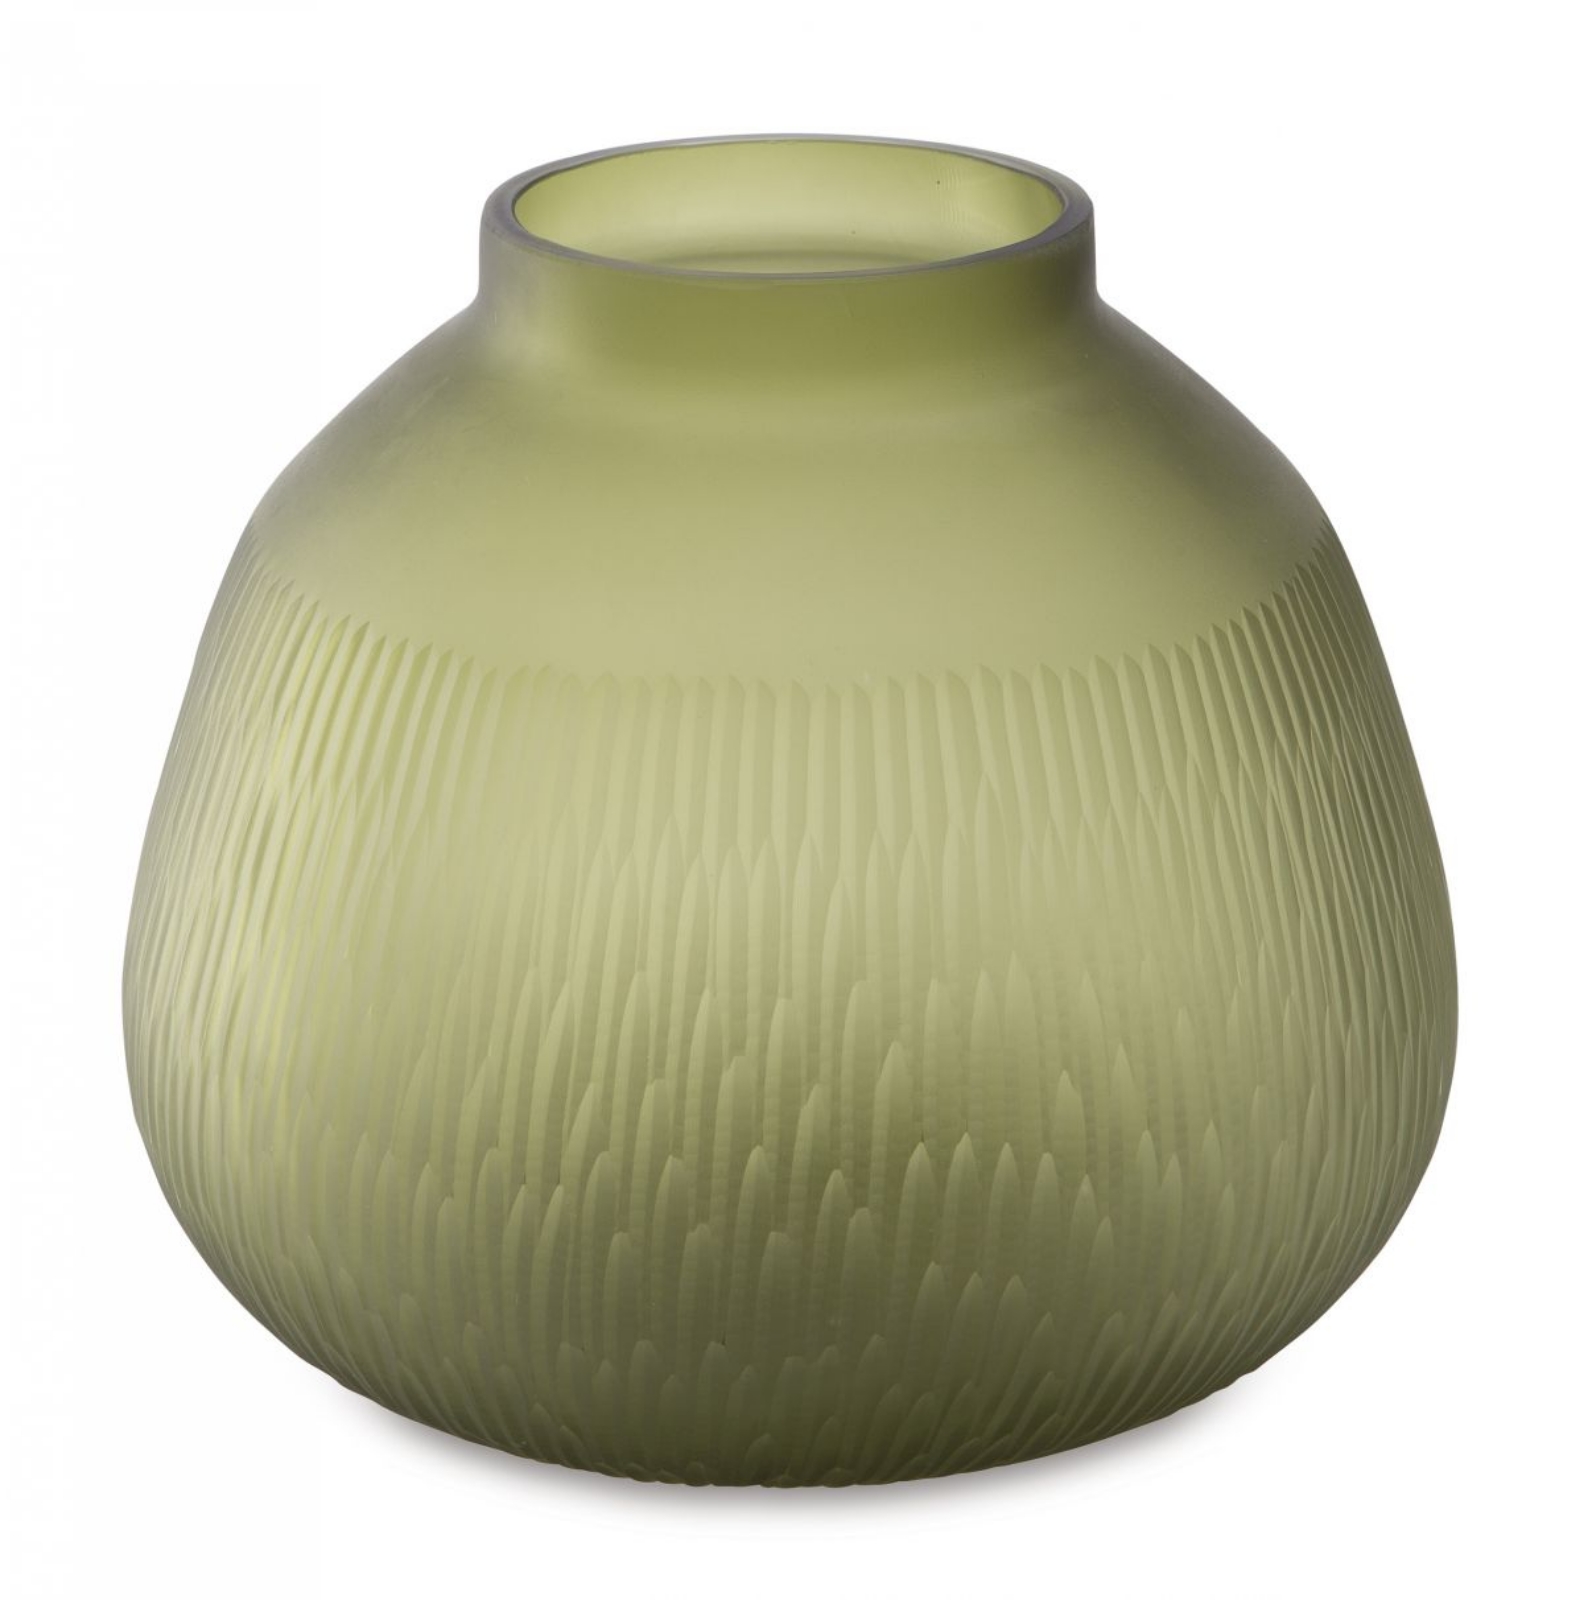 Picture of Scottyard Vase